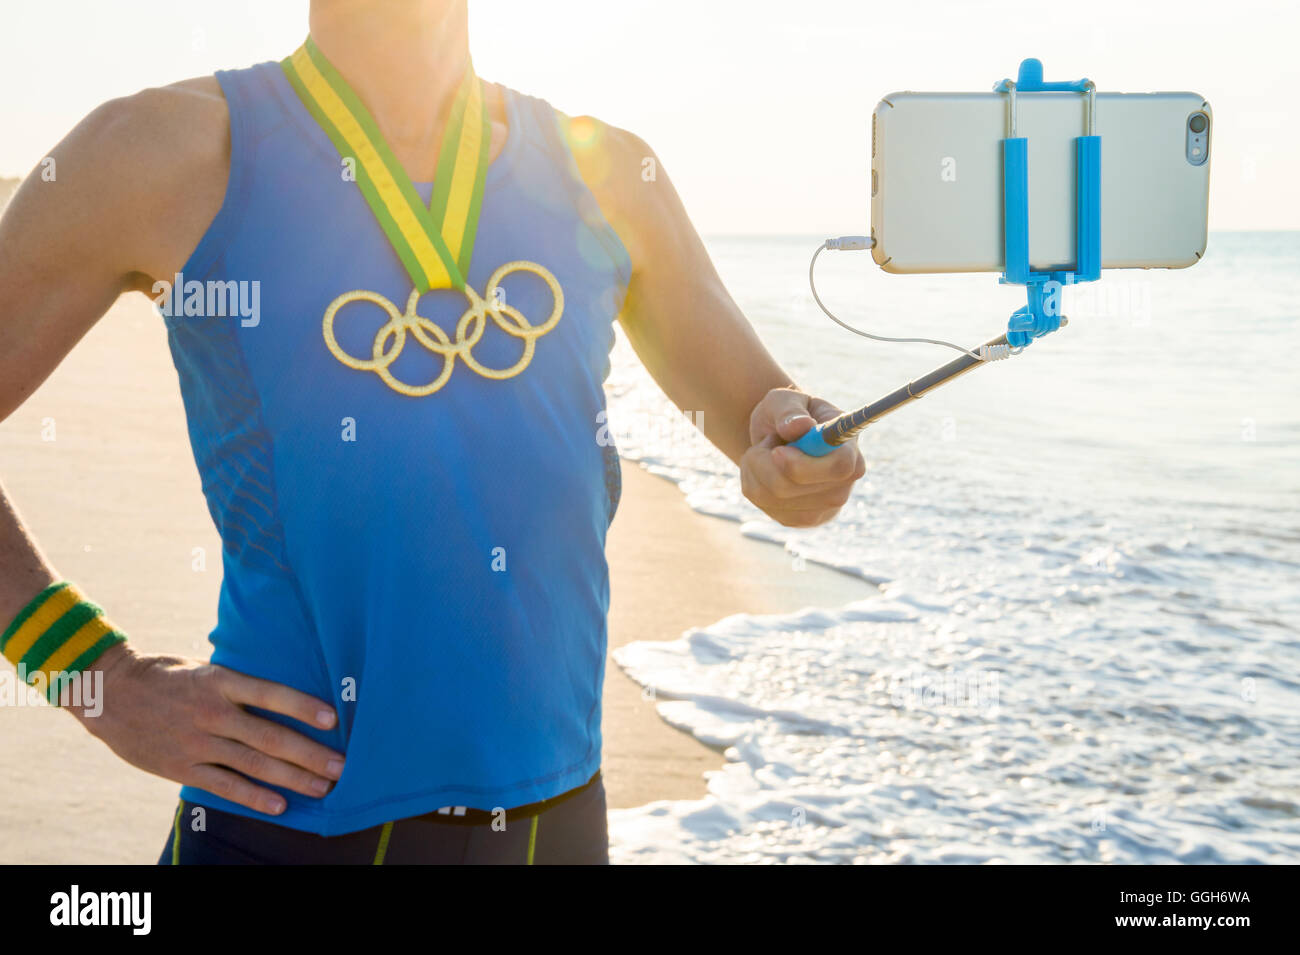 RIO DE JANEIRO - 10. März 2016: Sportler mit Olympischen Ringen Goldmedaille steht unter einem Selfie am Sonnenaufgang Strand. Stockfoto